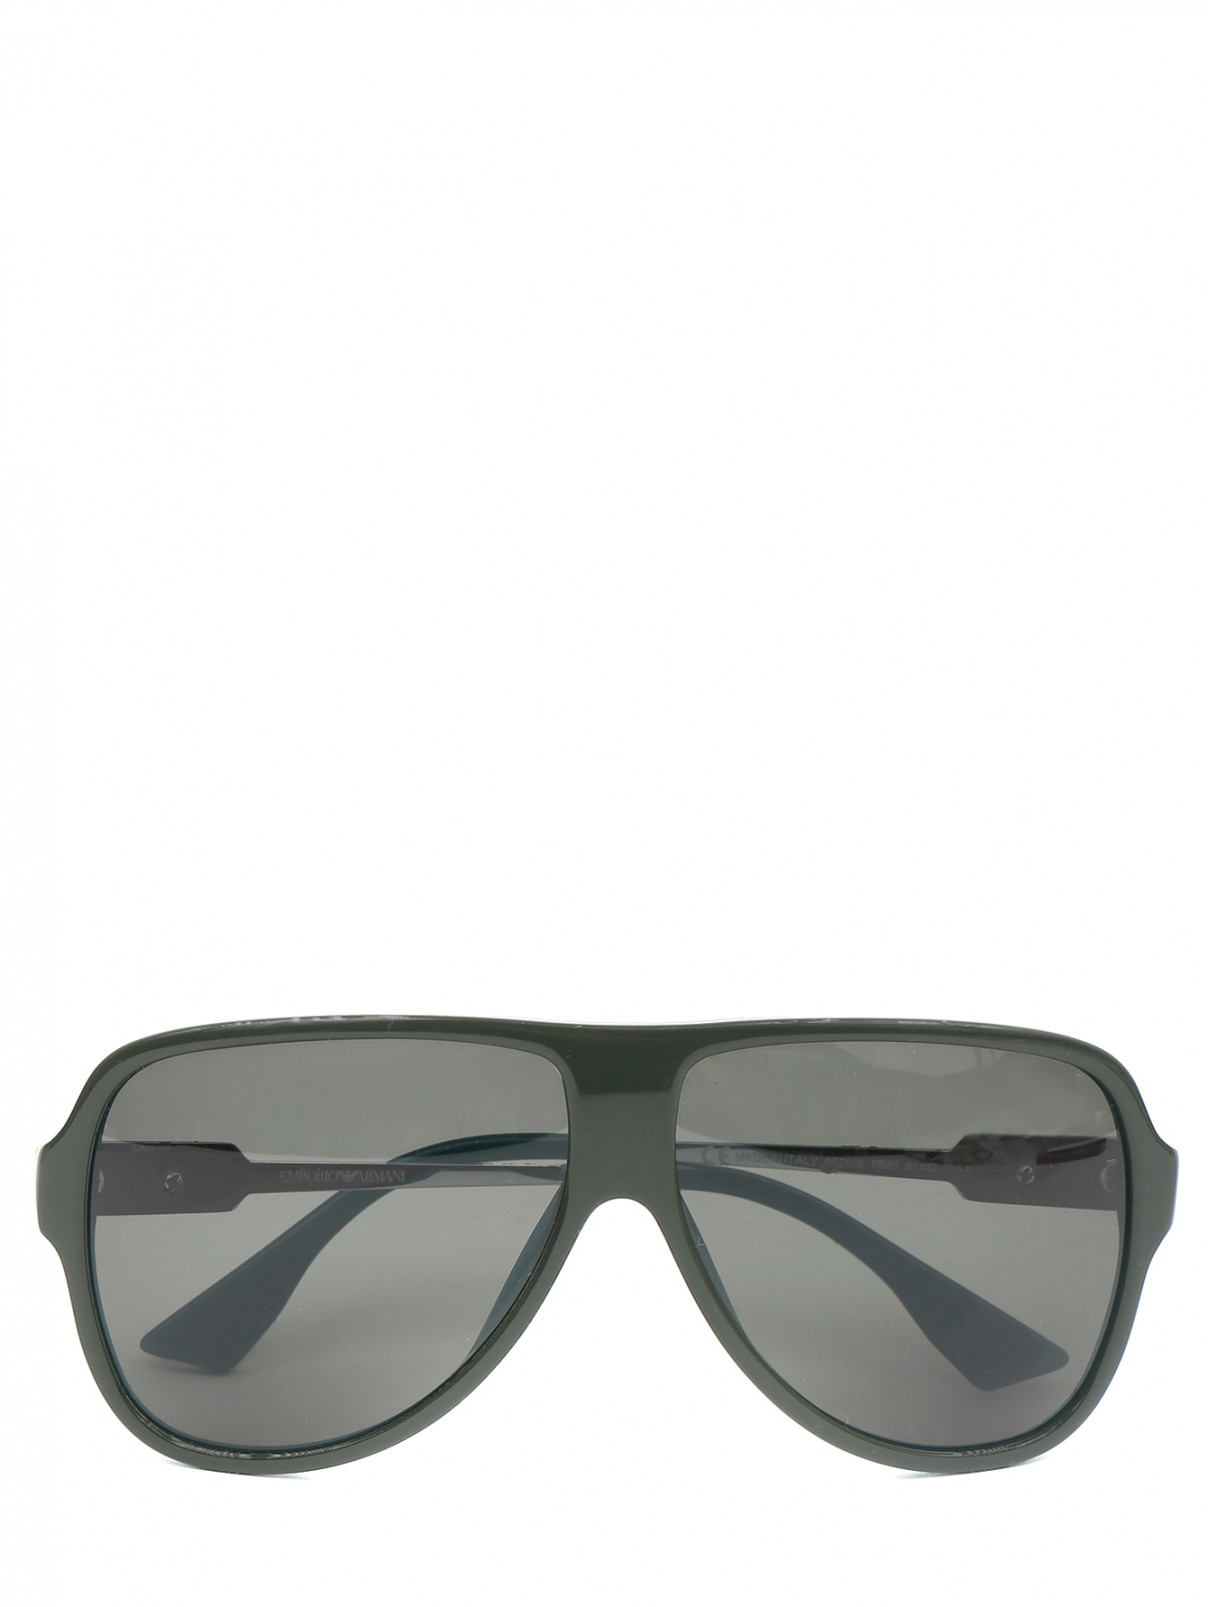 Солнцезащитные очки в оправе из пластика Emporio Armani  –  Общий вид  – Цвет:  Зеленый